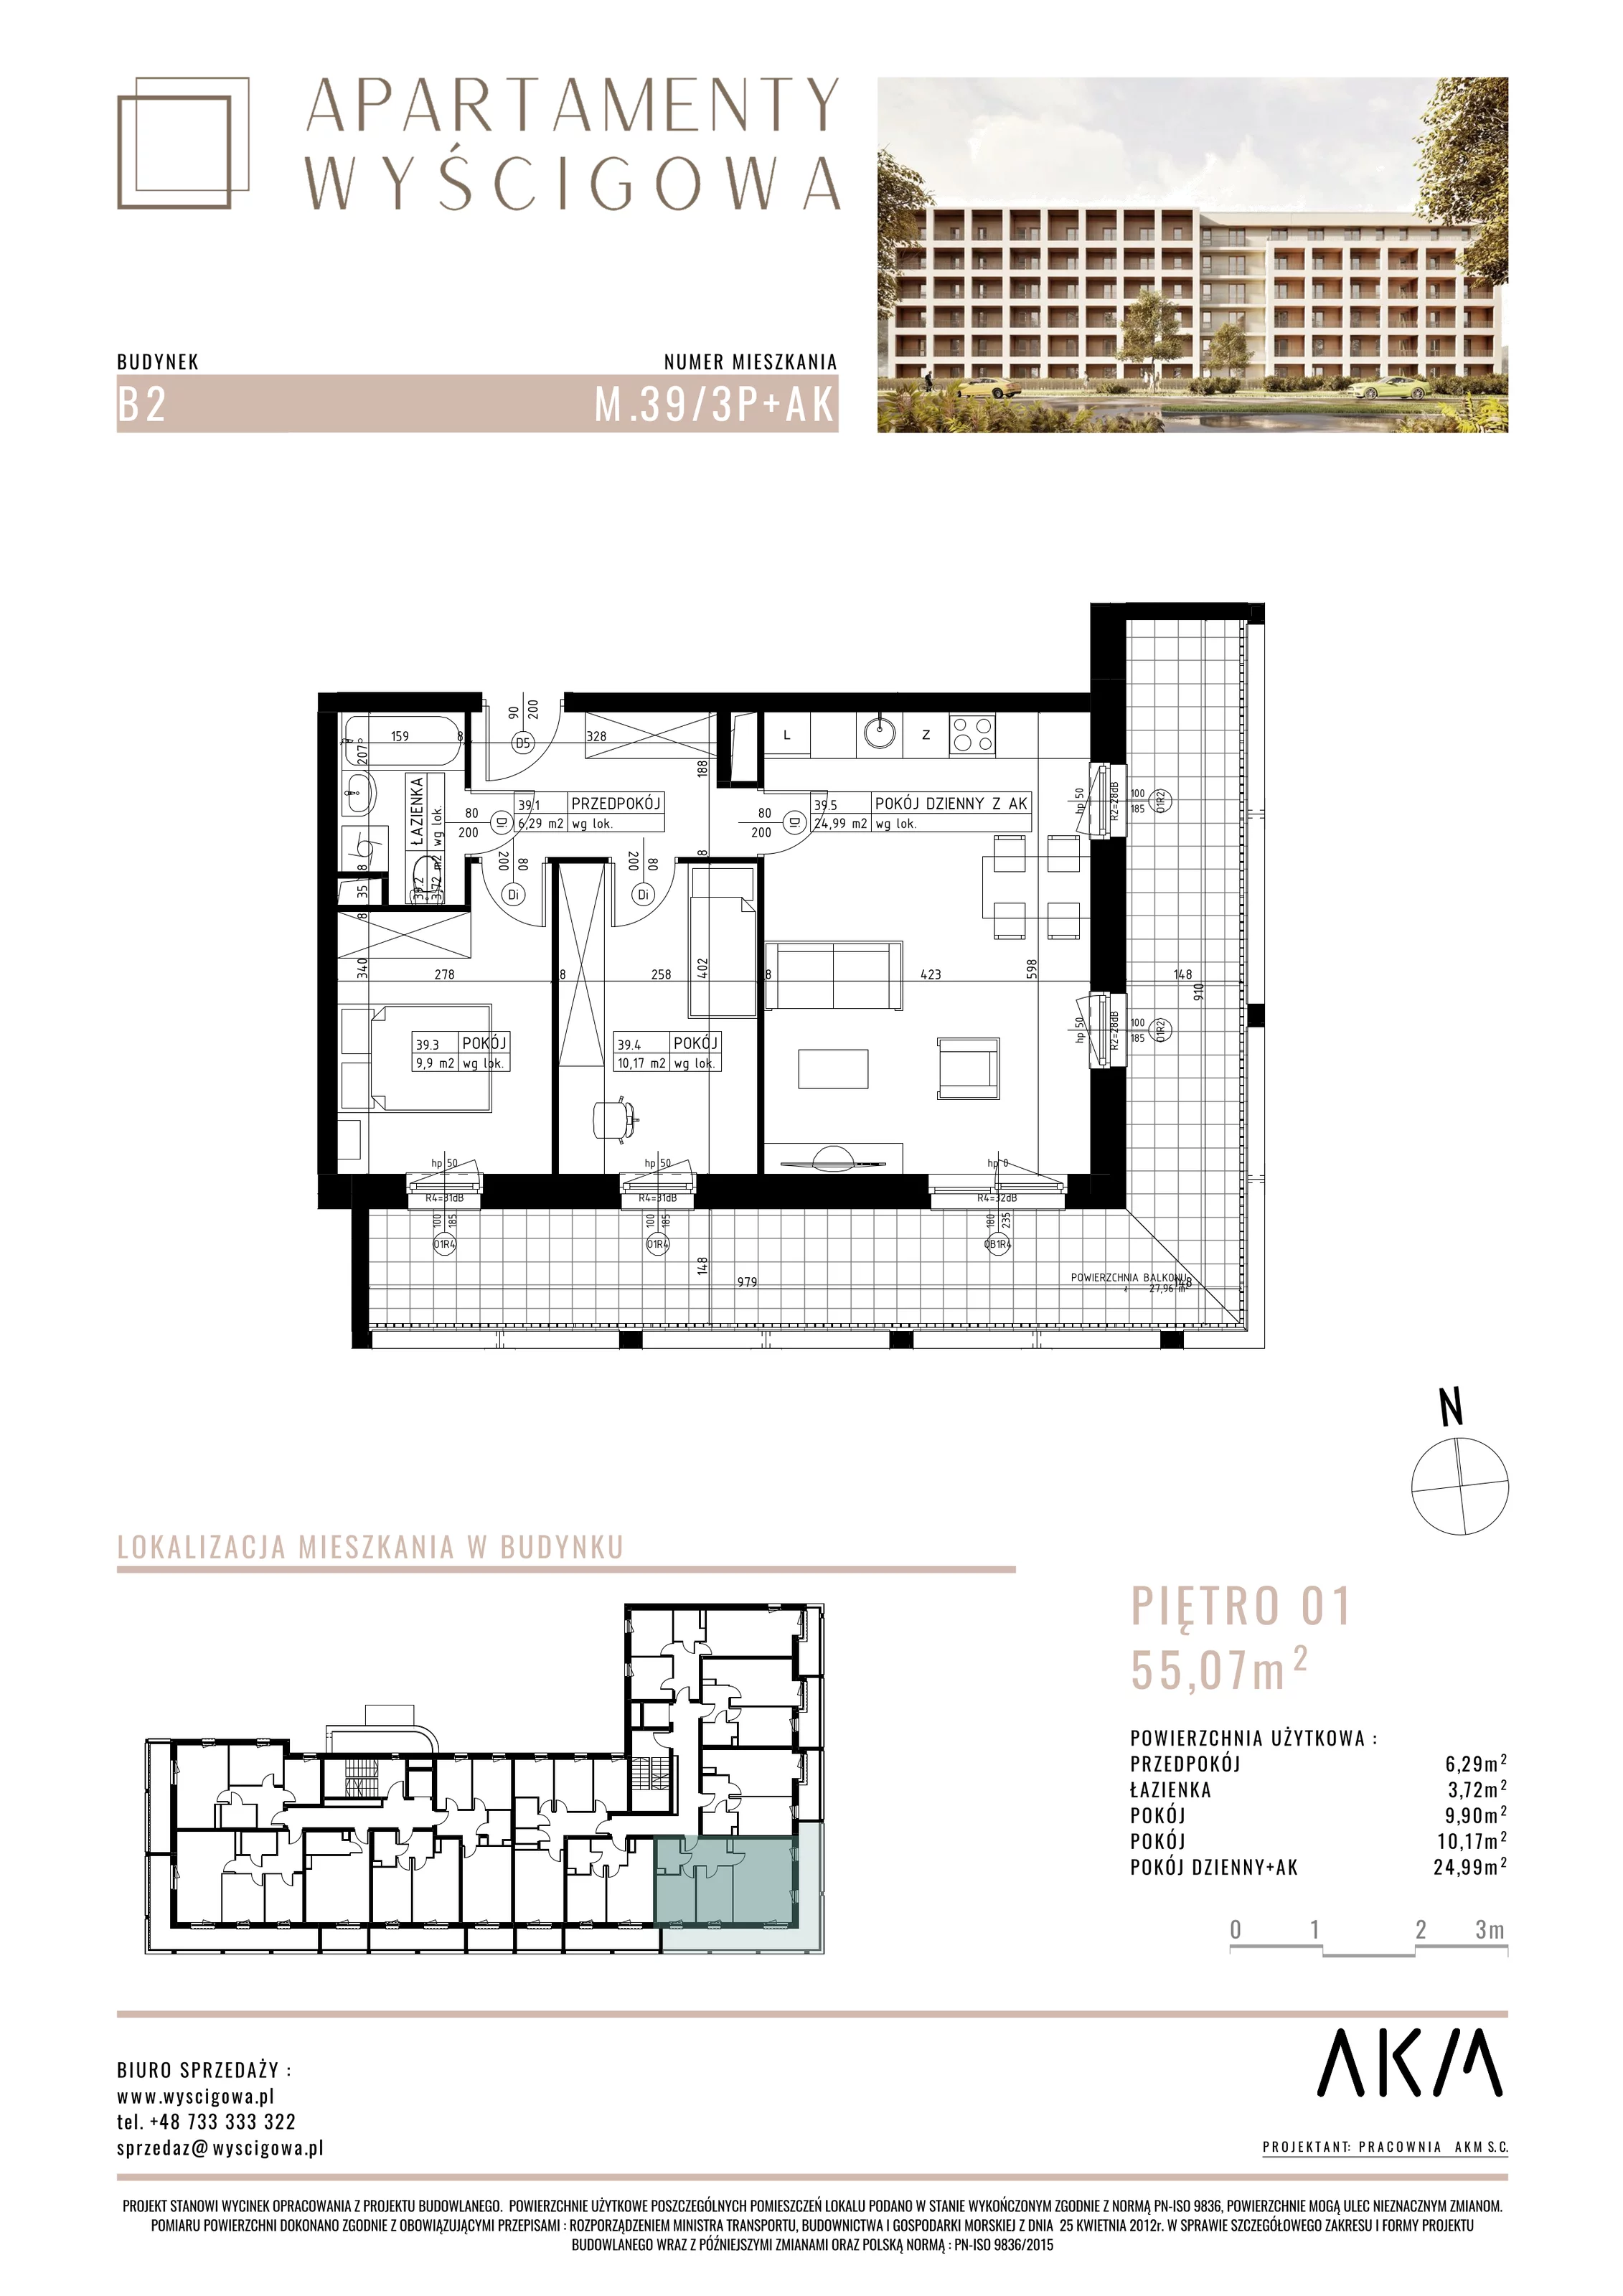 Mieszkanie 55,07 m², piętro 1, oferta nr B2.M39, Apartamenty Wyścigowa, Lublin, Dziesiąta, Dziesiąta, ul. Wyścigowa